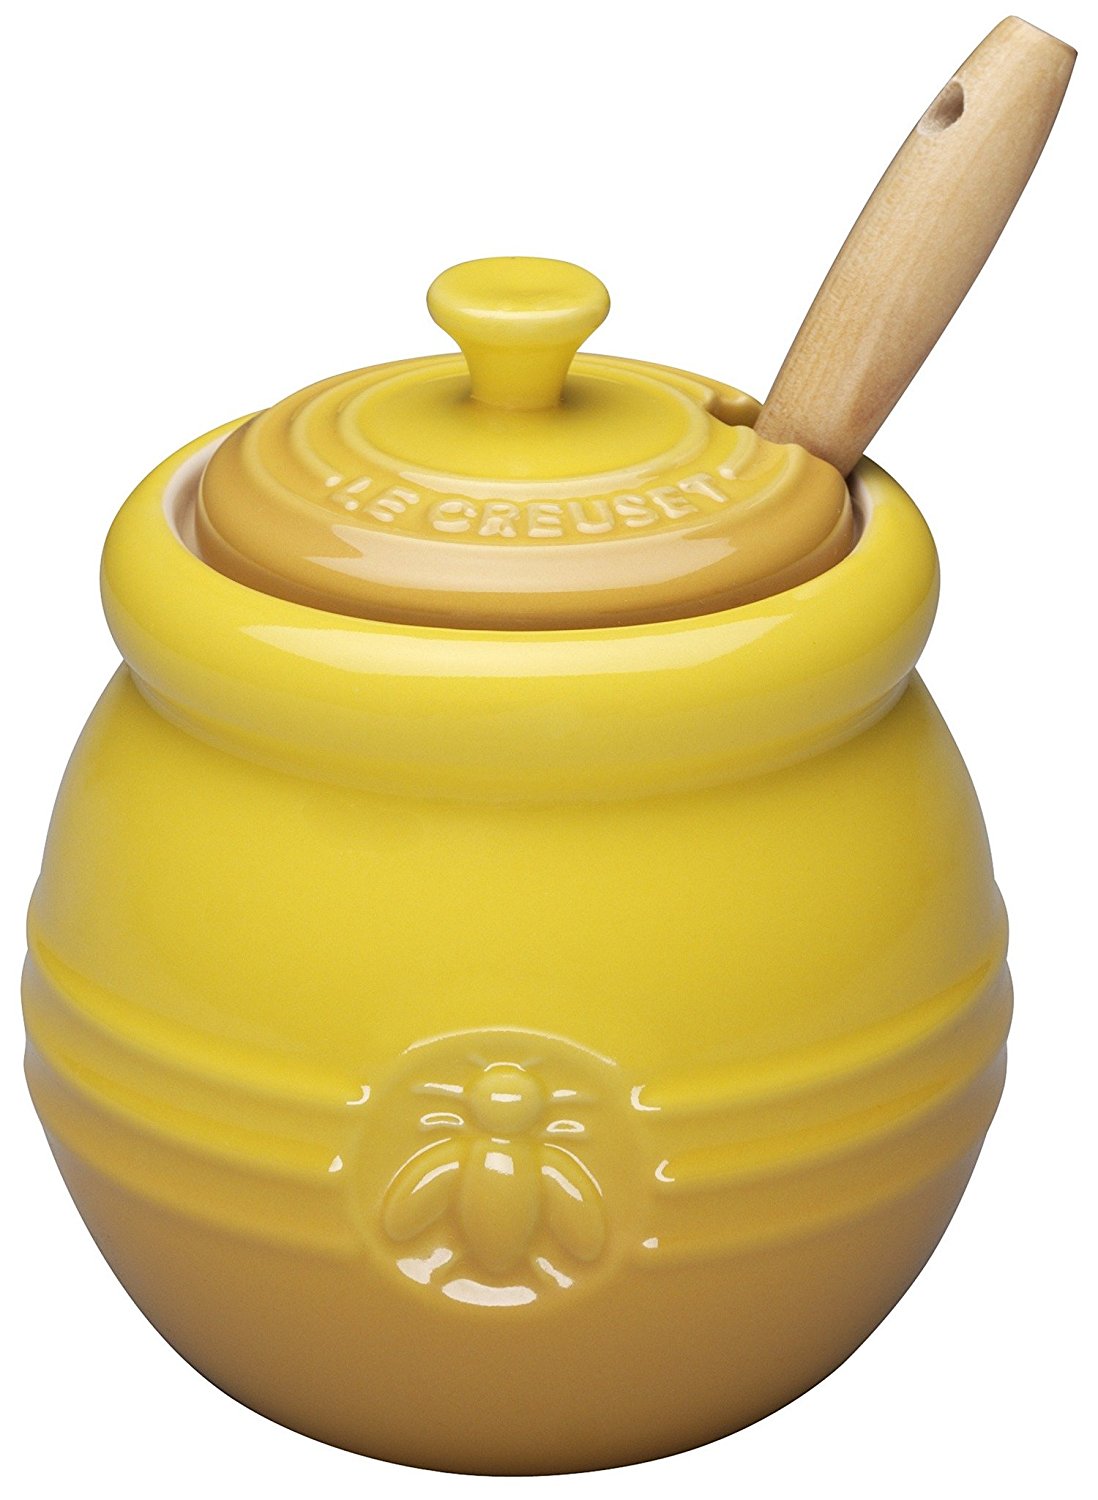 Le Creuset Honey Pot Product Image